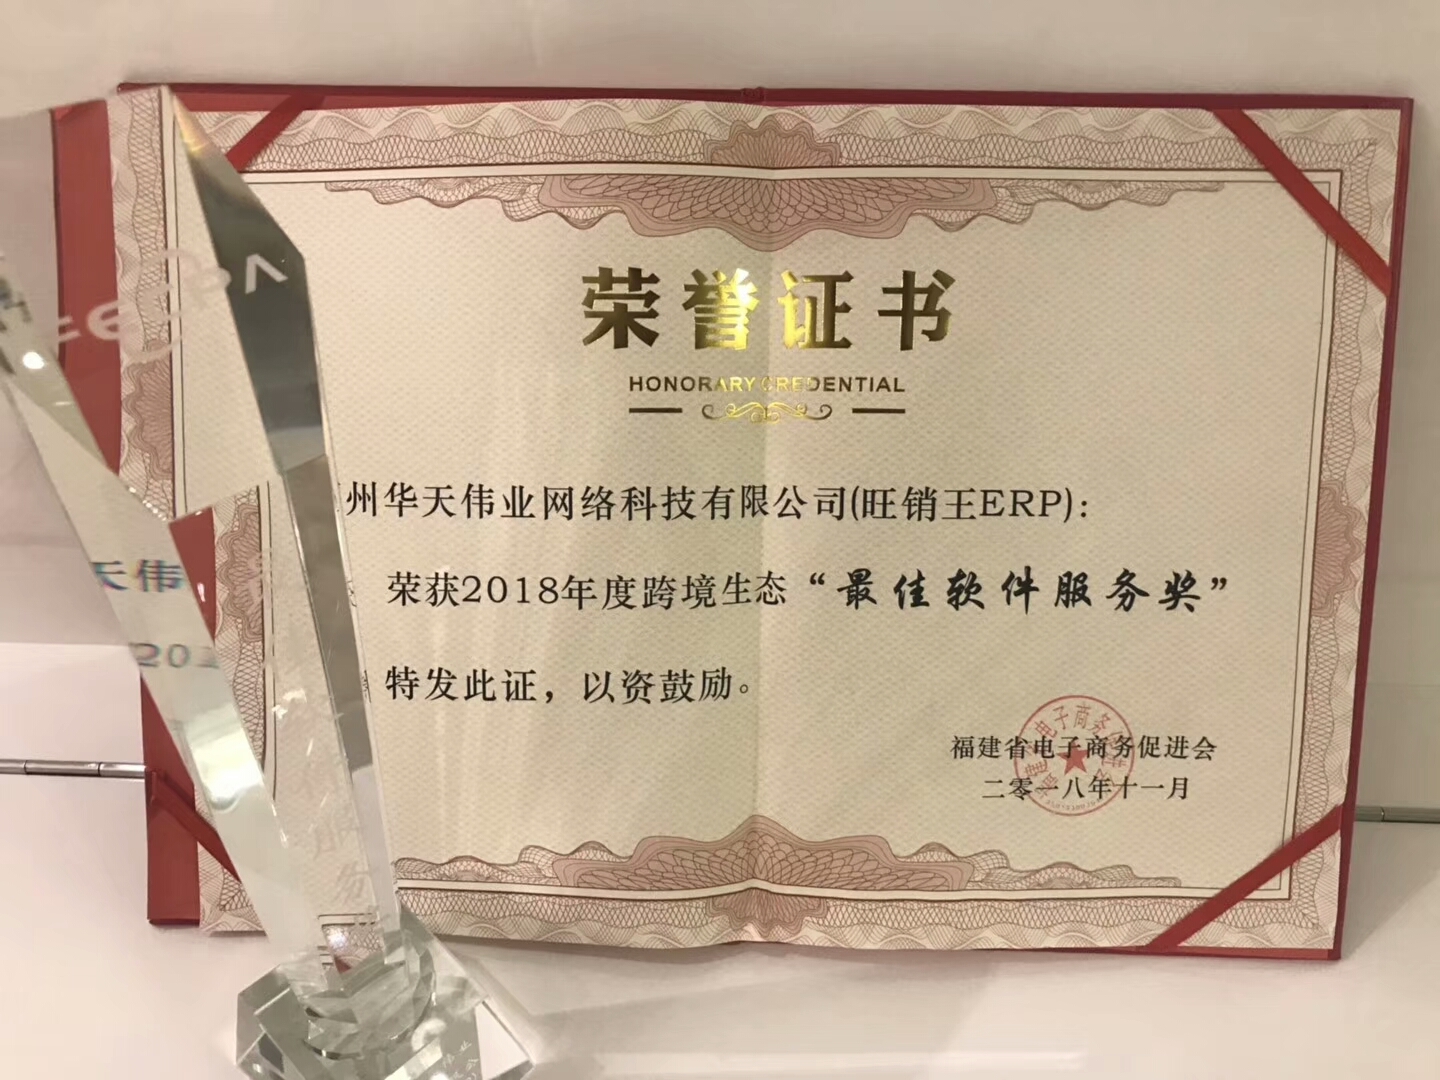 旺销王ERP荣获“最佳软件服务商奖”